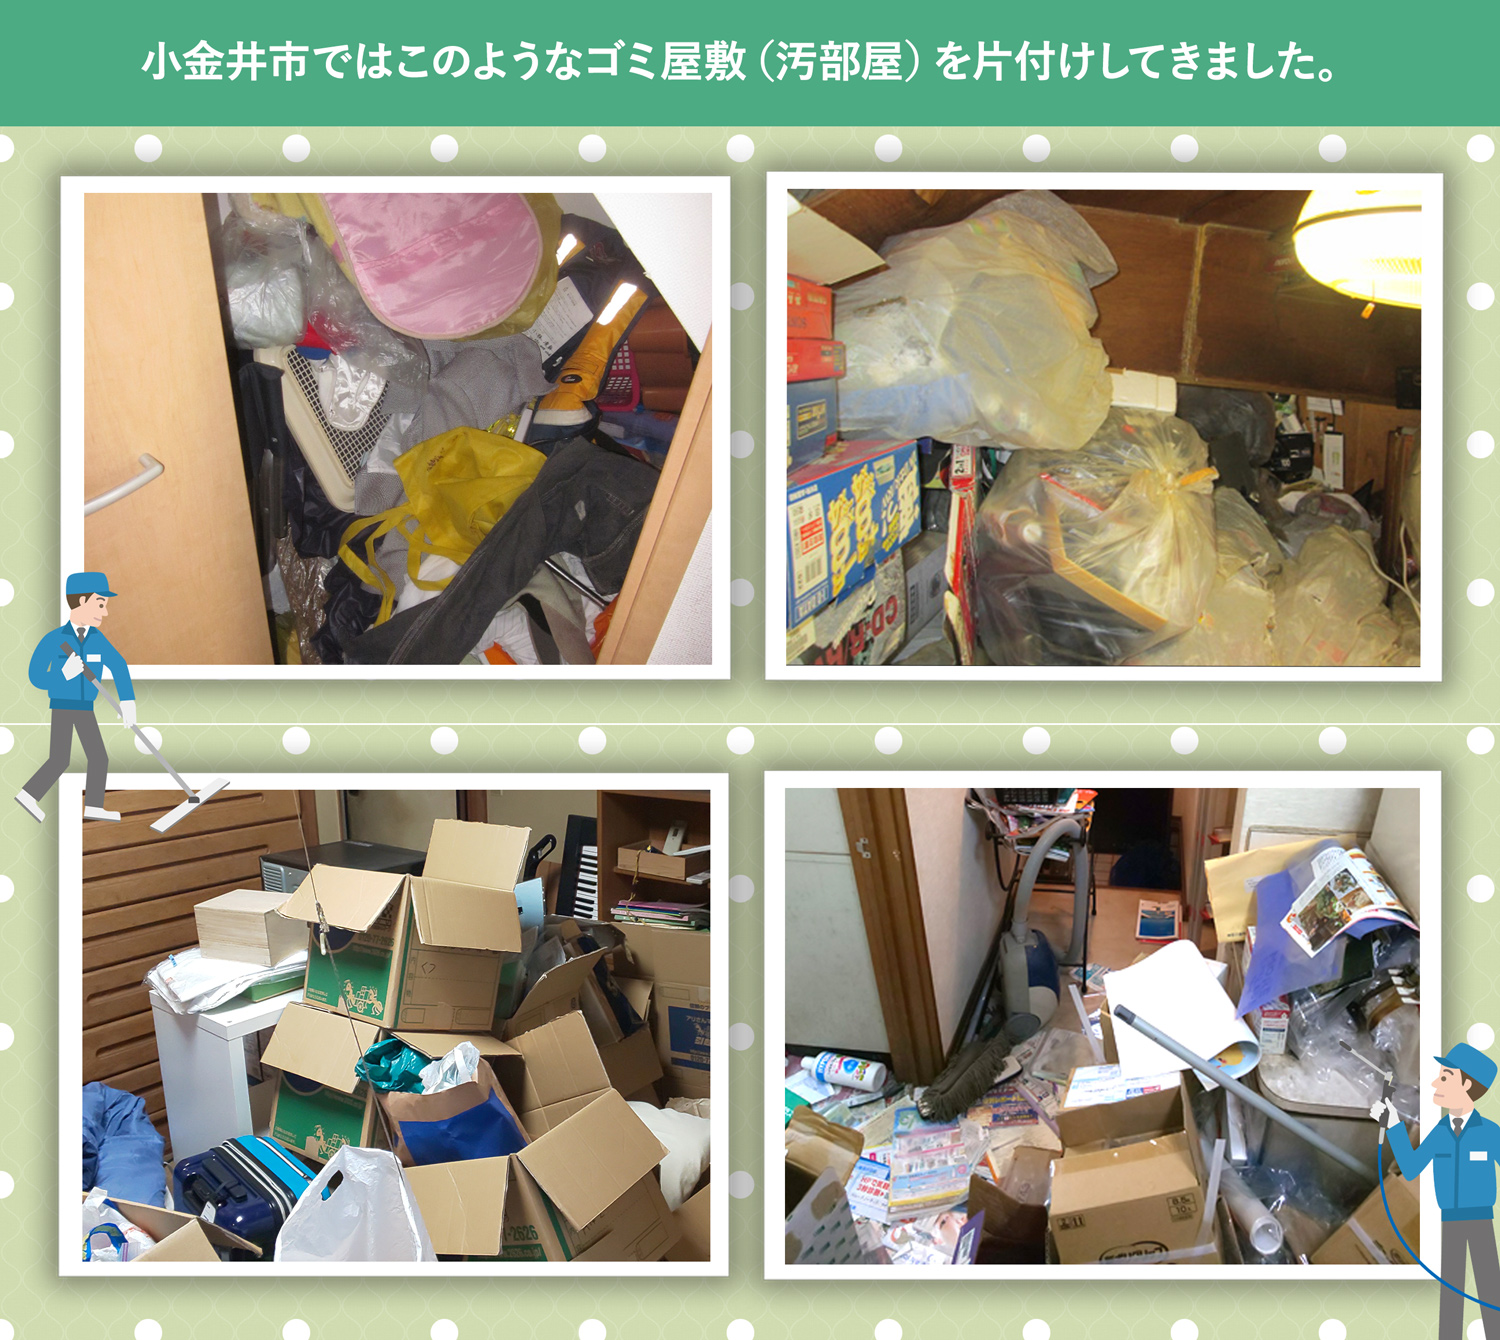 小金井市で行ったで行ったごみ屋敷・汚部屋の片付けの一例